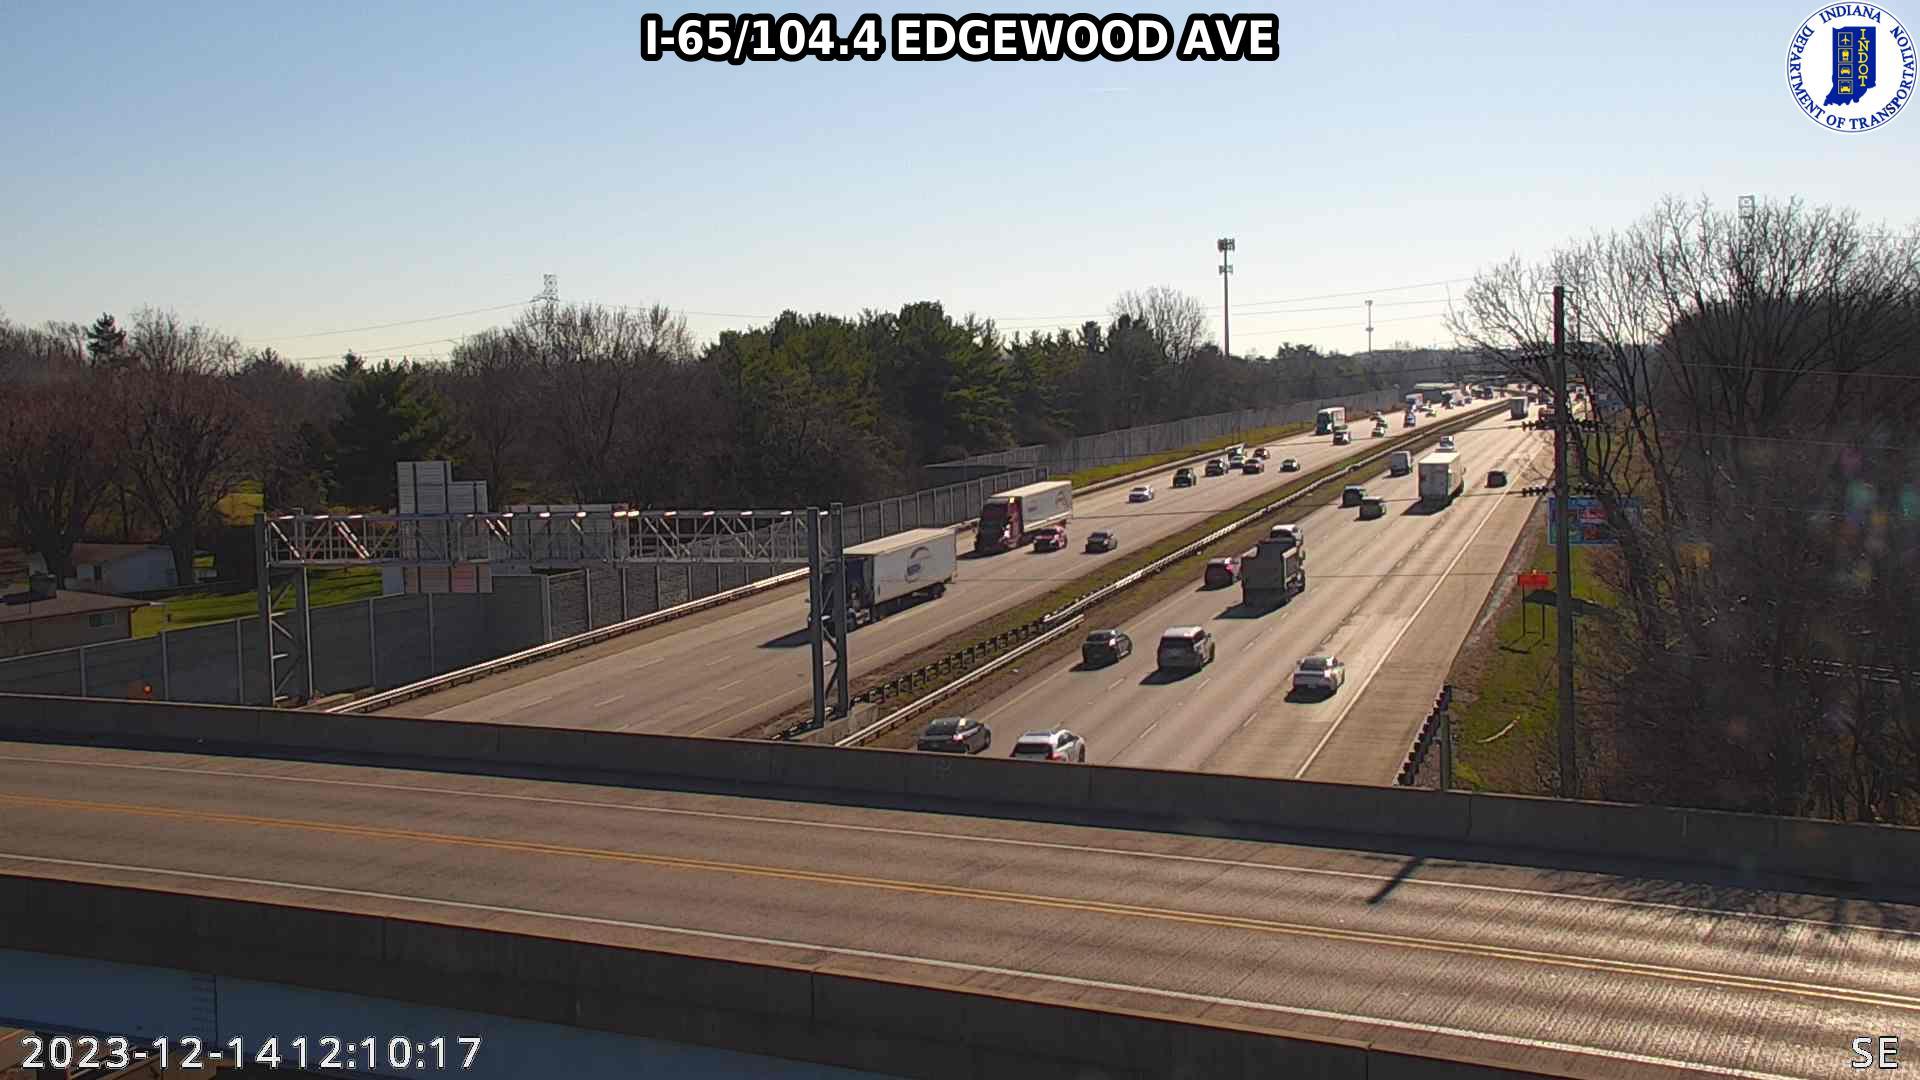 Traffic Cam Indianapolis: I-65: I-65/104.4 EDGEWOOD AVE Player